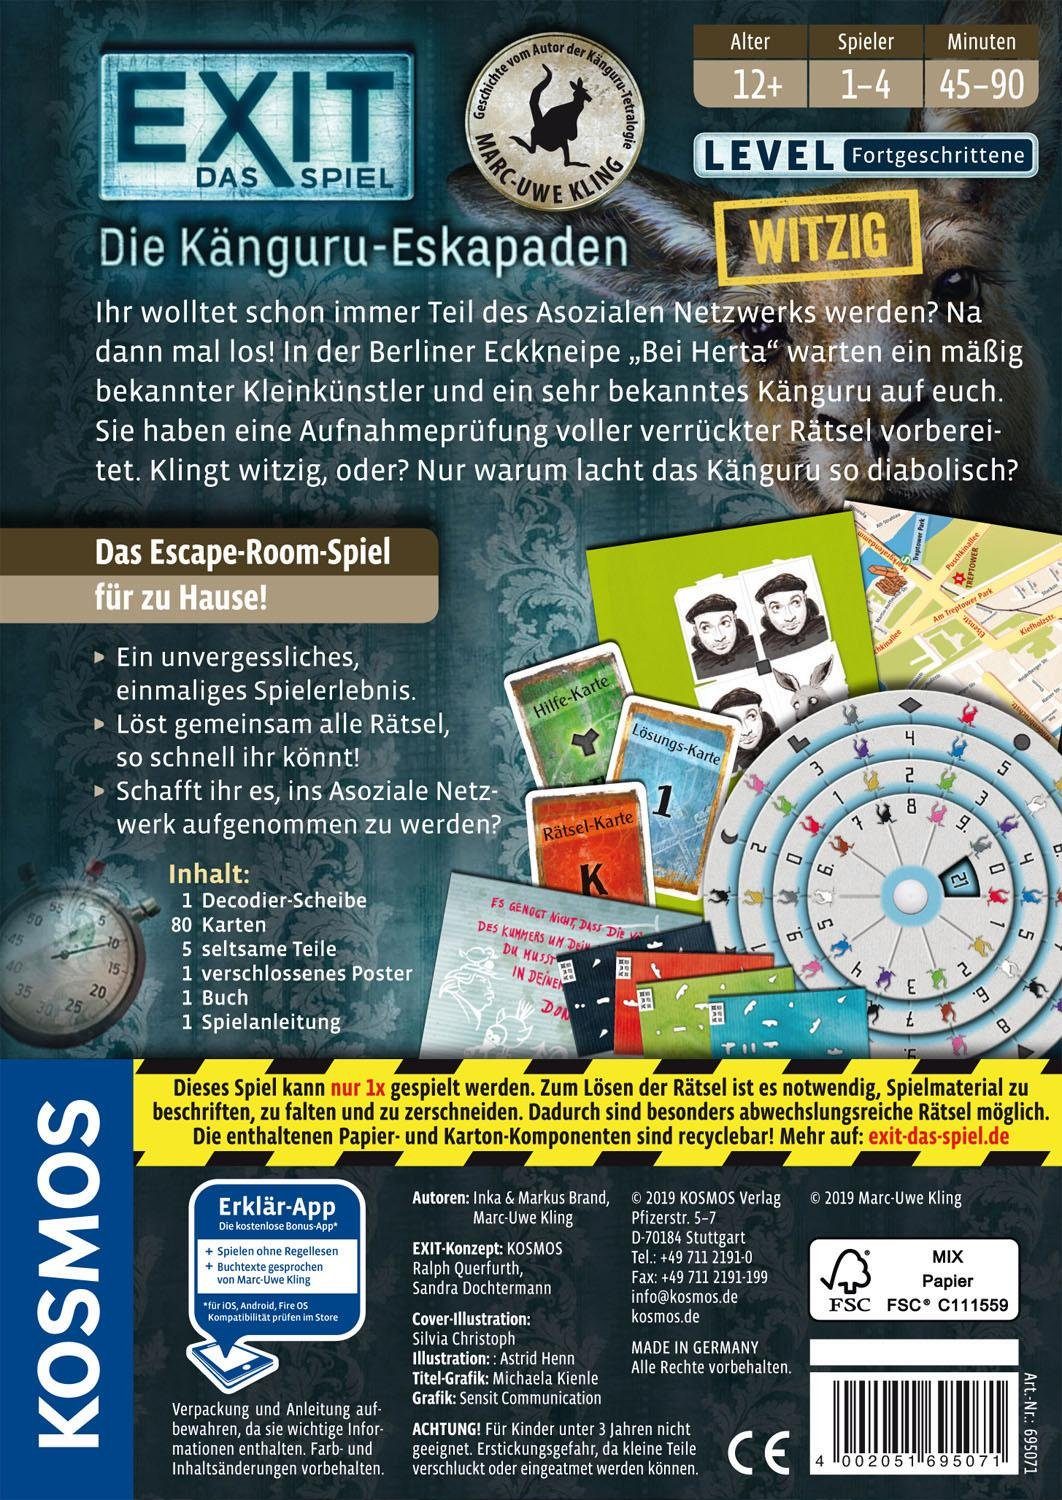 Spiel, Die - Kosmos in Känguru-Eskapaden, EXIT Germany Made